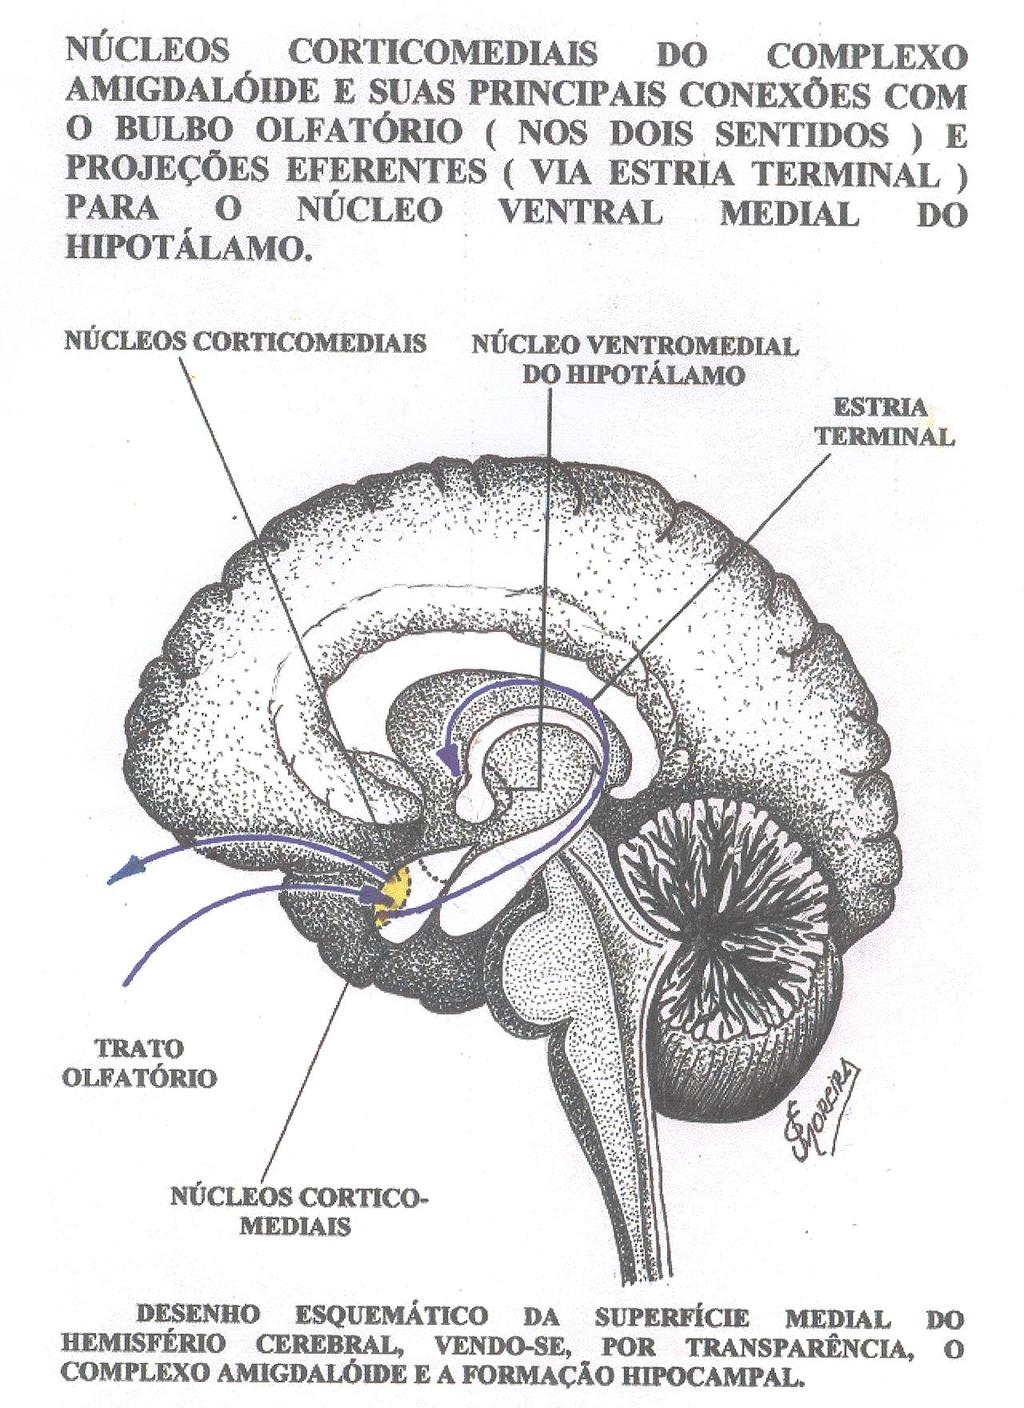 Grupo Nuclear Cortico-medial, do Complexo Amigdalóide e suas principais conexões, com o Bulbo e Trato Olfatório ( nos dois sentidos ) e Projeções Eferentes ( Via Estria Terminal ), para o Núcleo